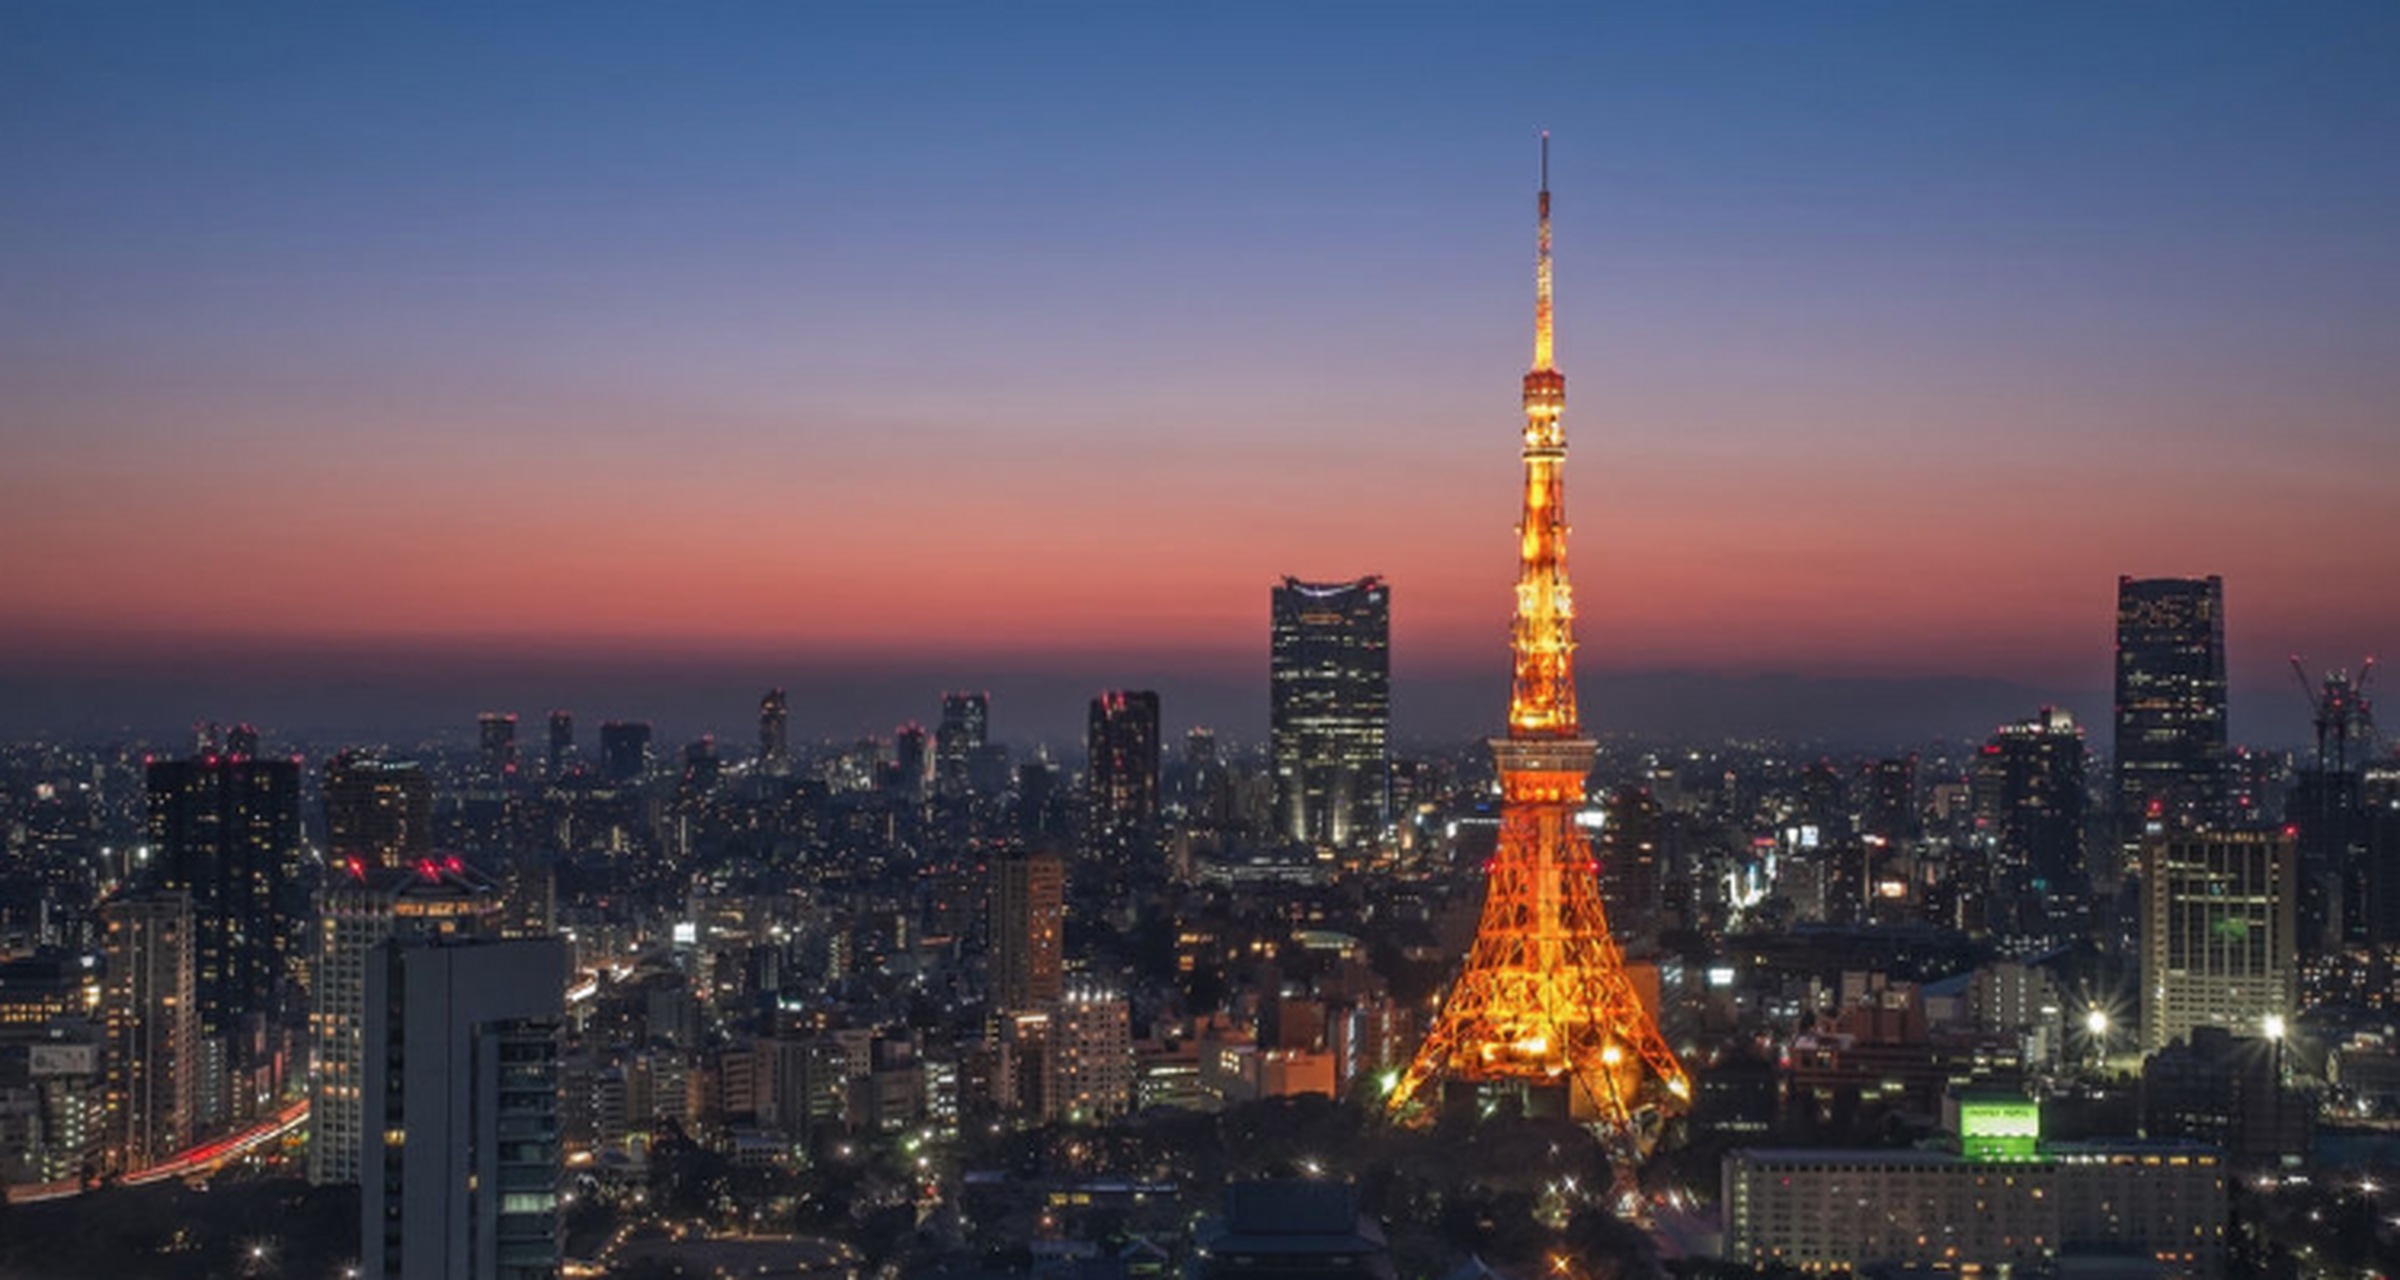 日本东京风景 真实图片